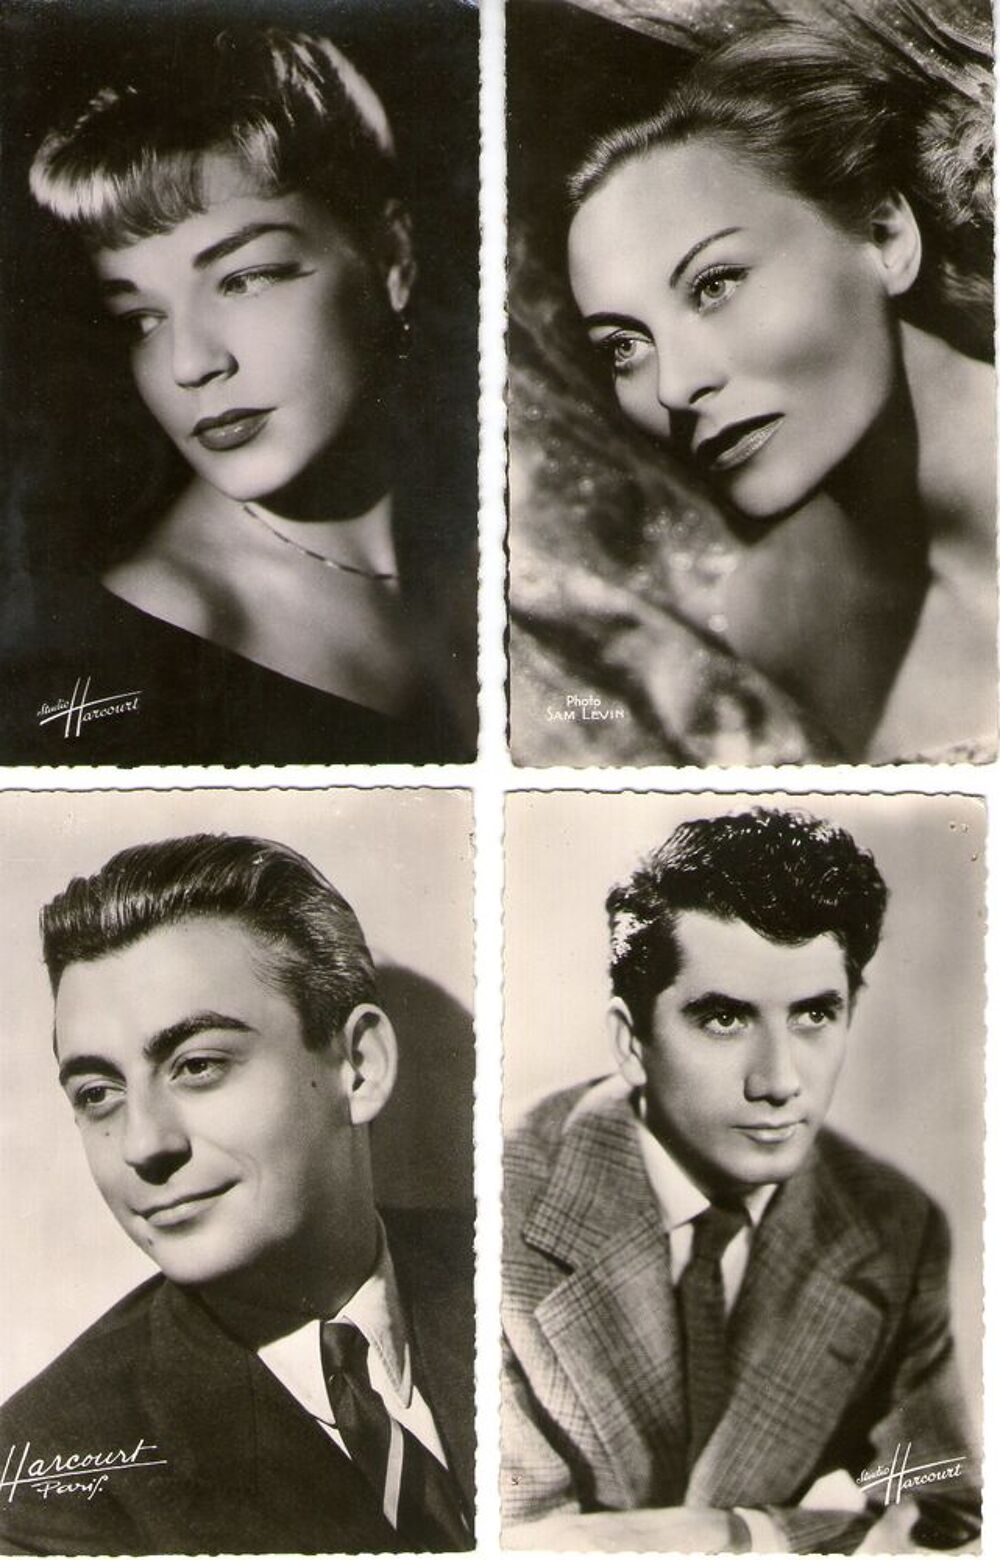 Cartes postales anciennes d'acteurs et actrices 